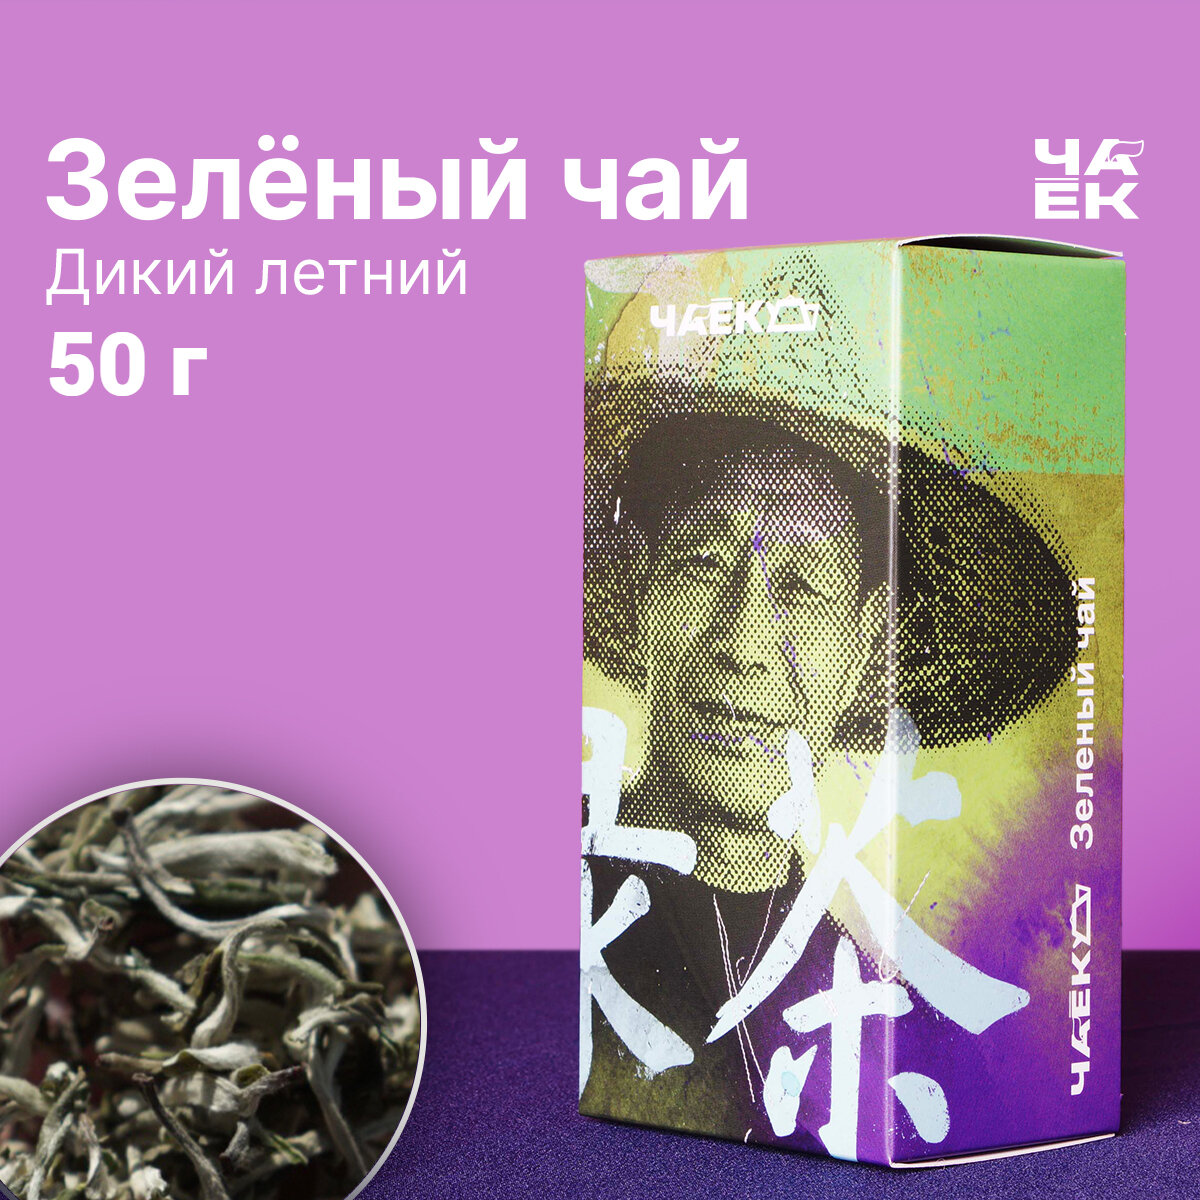 Зелёный чай Мао Фэн "Дикий летний" чаёк 50 грамм